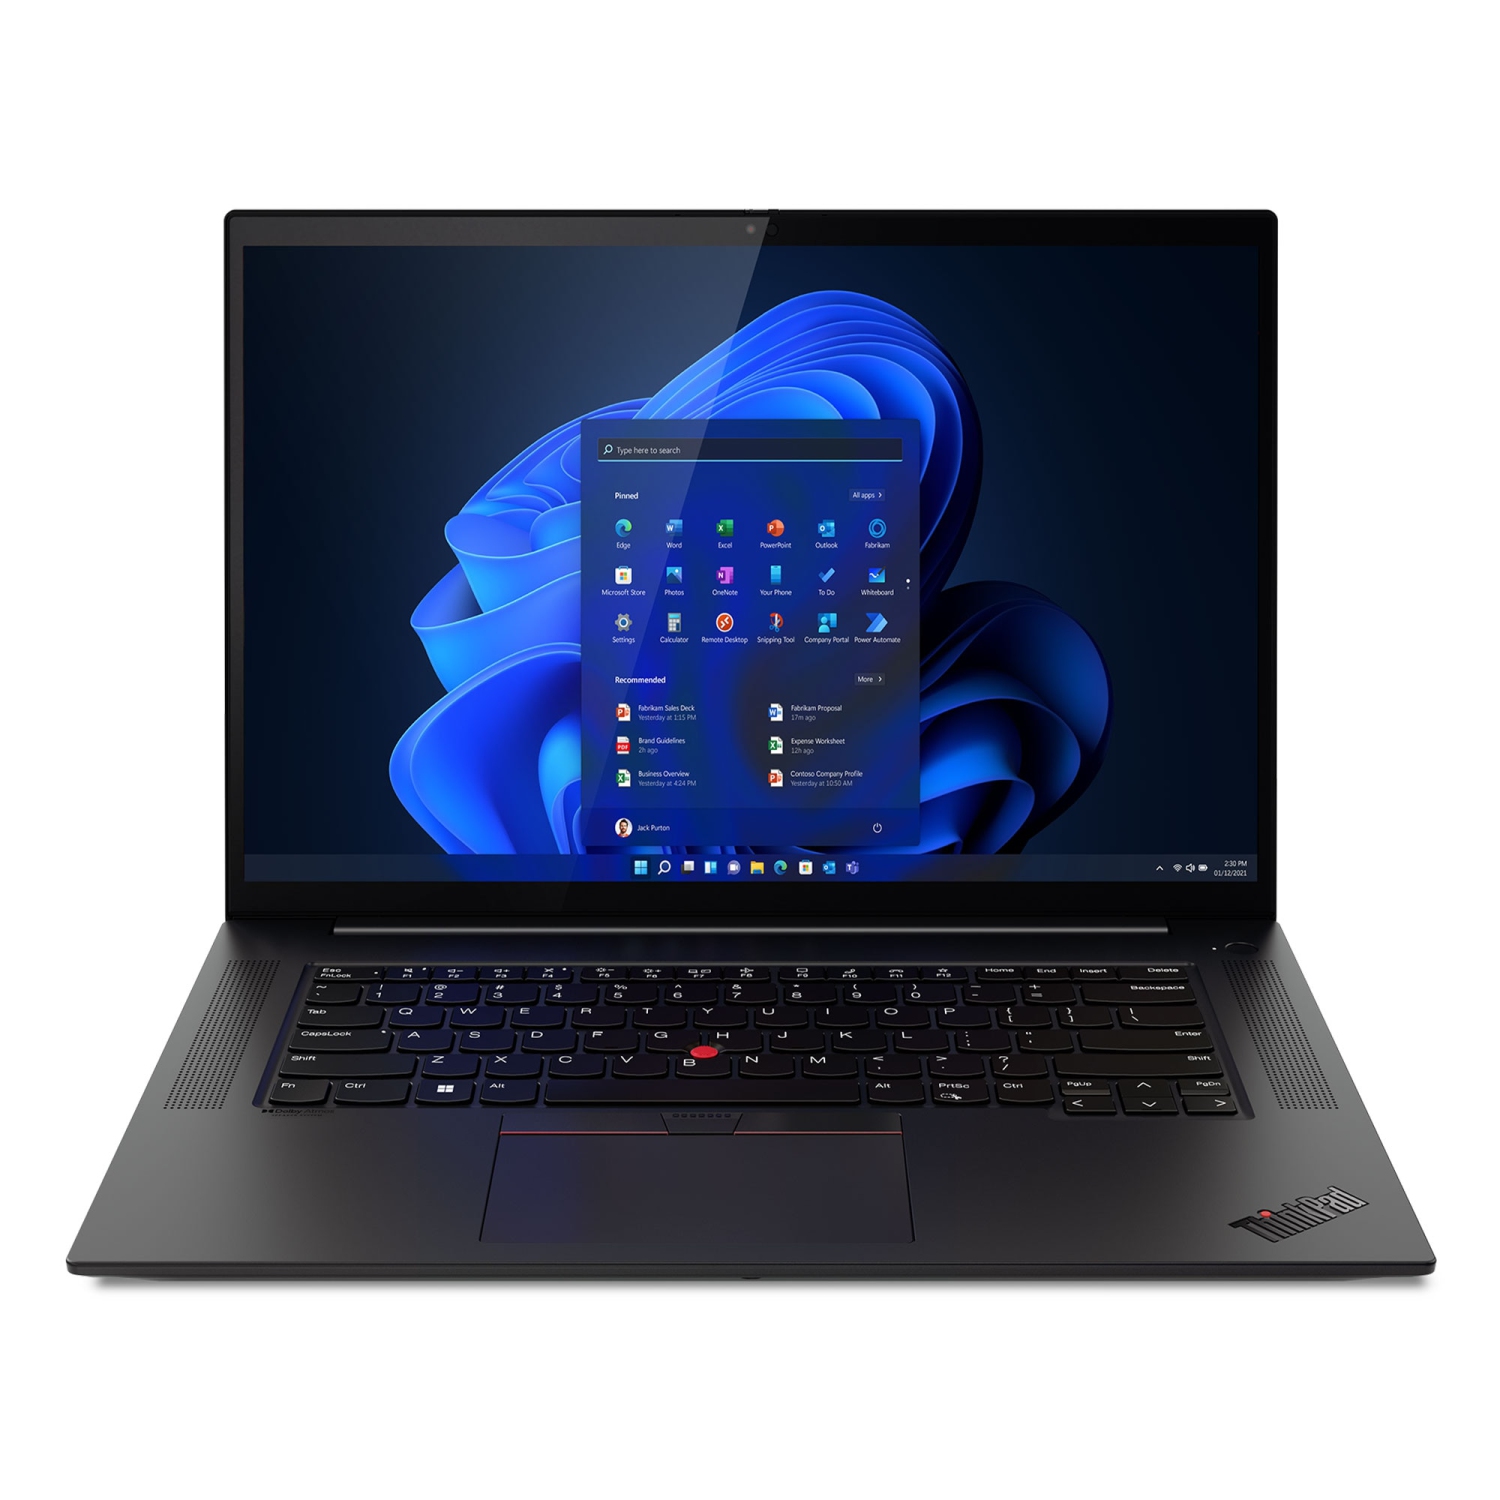 Lenovo ThinkPad X1 Extreme Gen 5 Intel Laptop, 16" IPS LED Backlight, i7-12700H, NVIDIA GeForce RTX 3060 Laptop GPU 6GB GDDR6